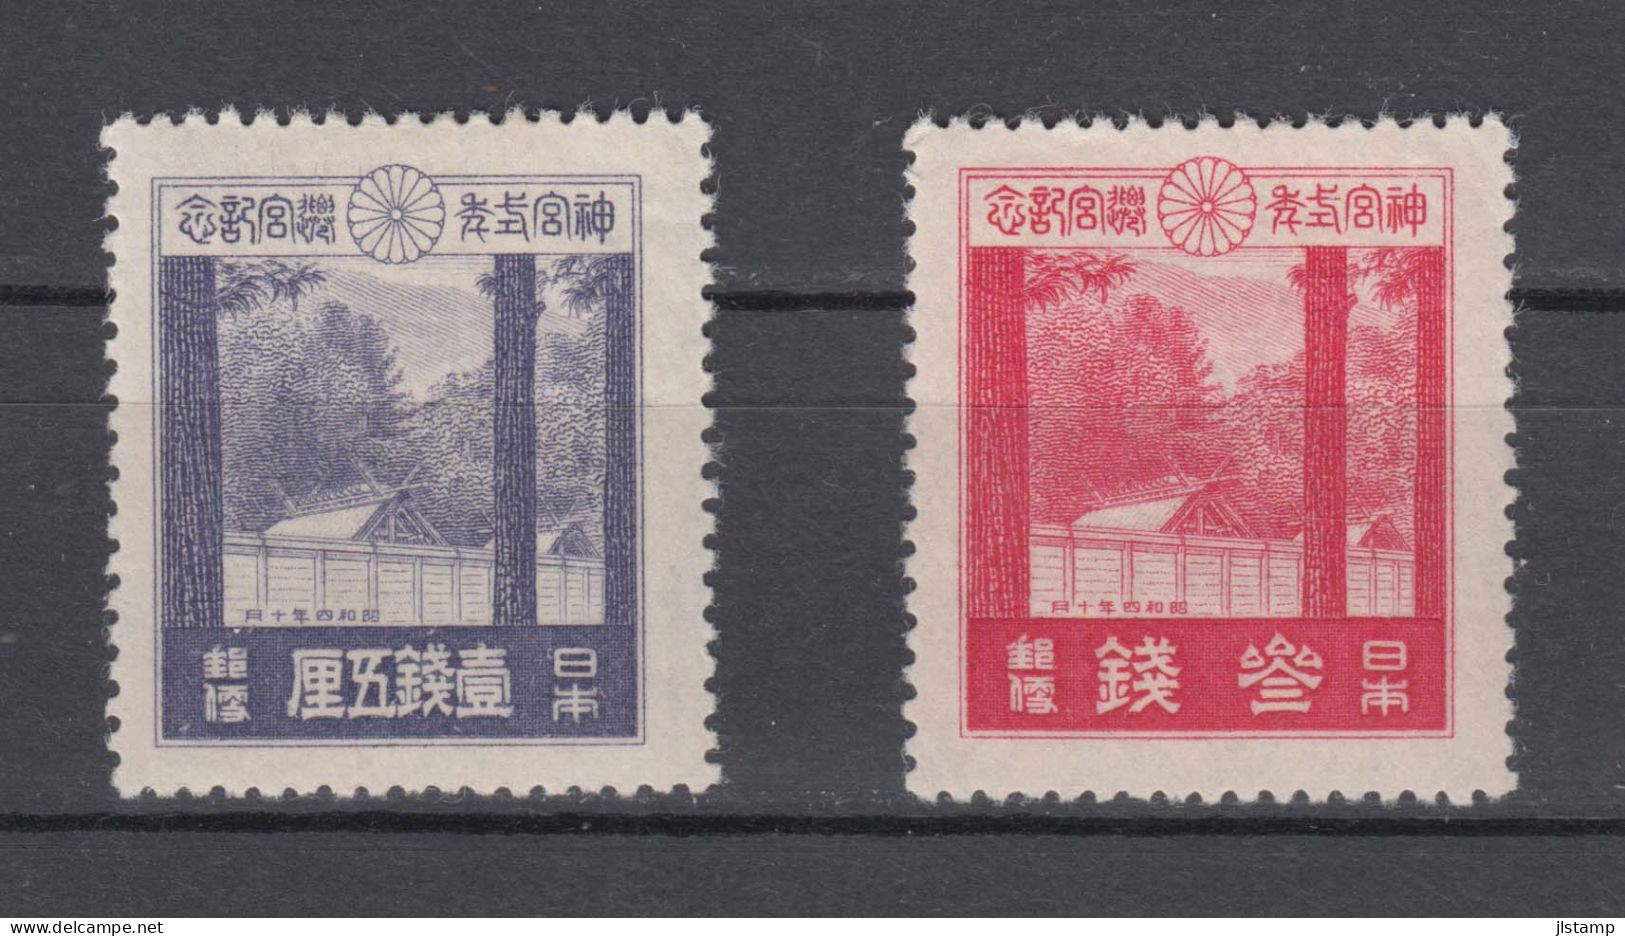 Japan 1929 Ise Shrines Stamps Set Of 2 ,Scott# 206-207,OG MH,VF - Ongebruikt